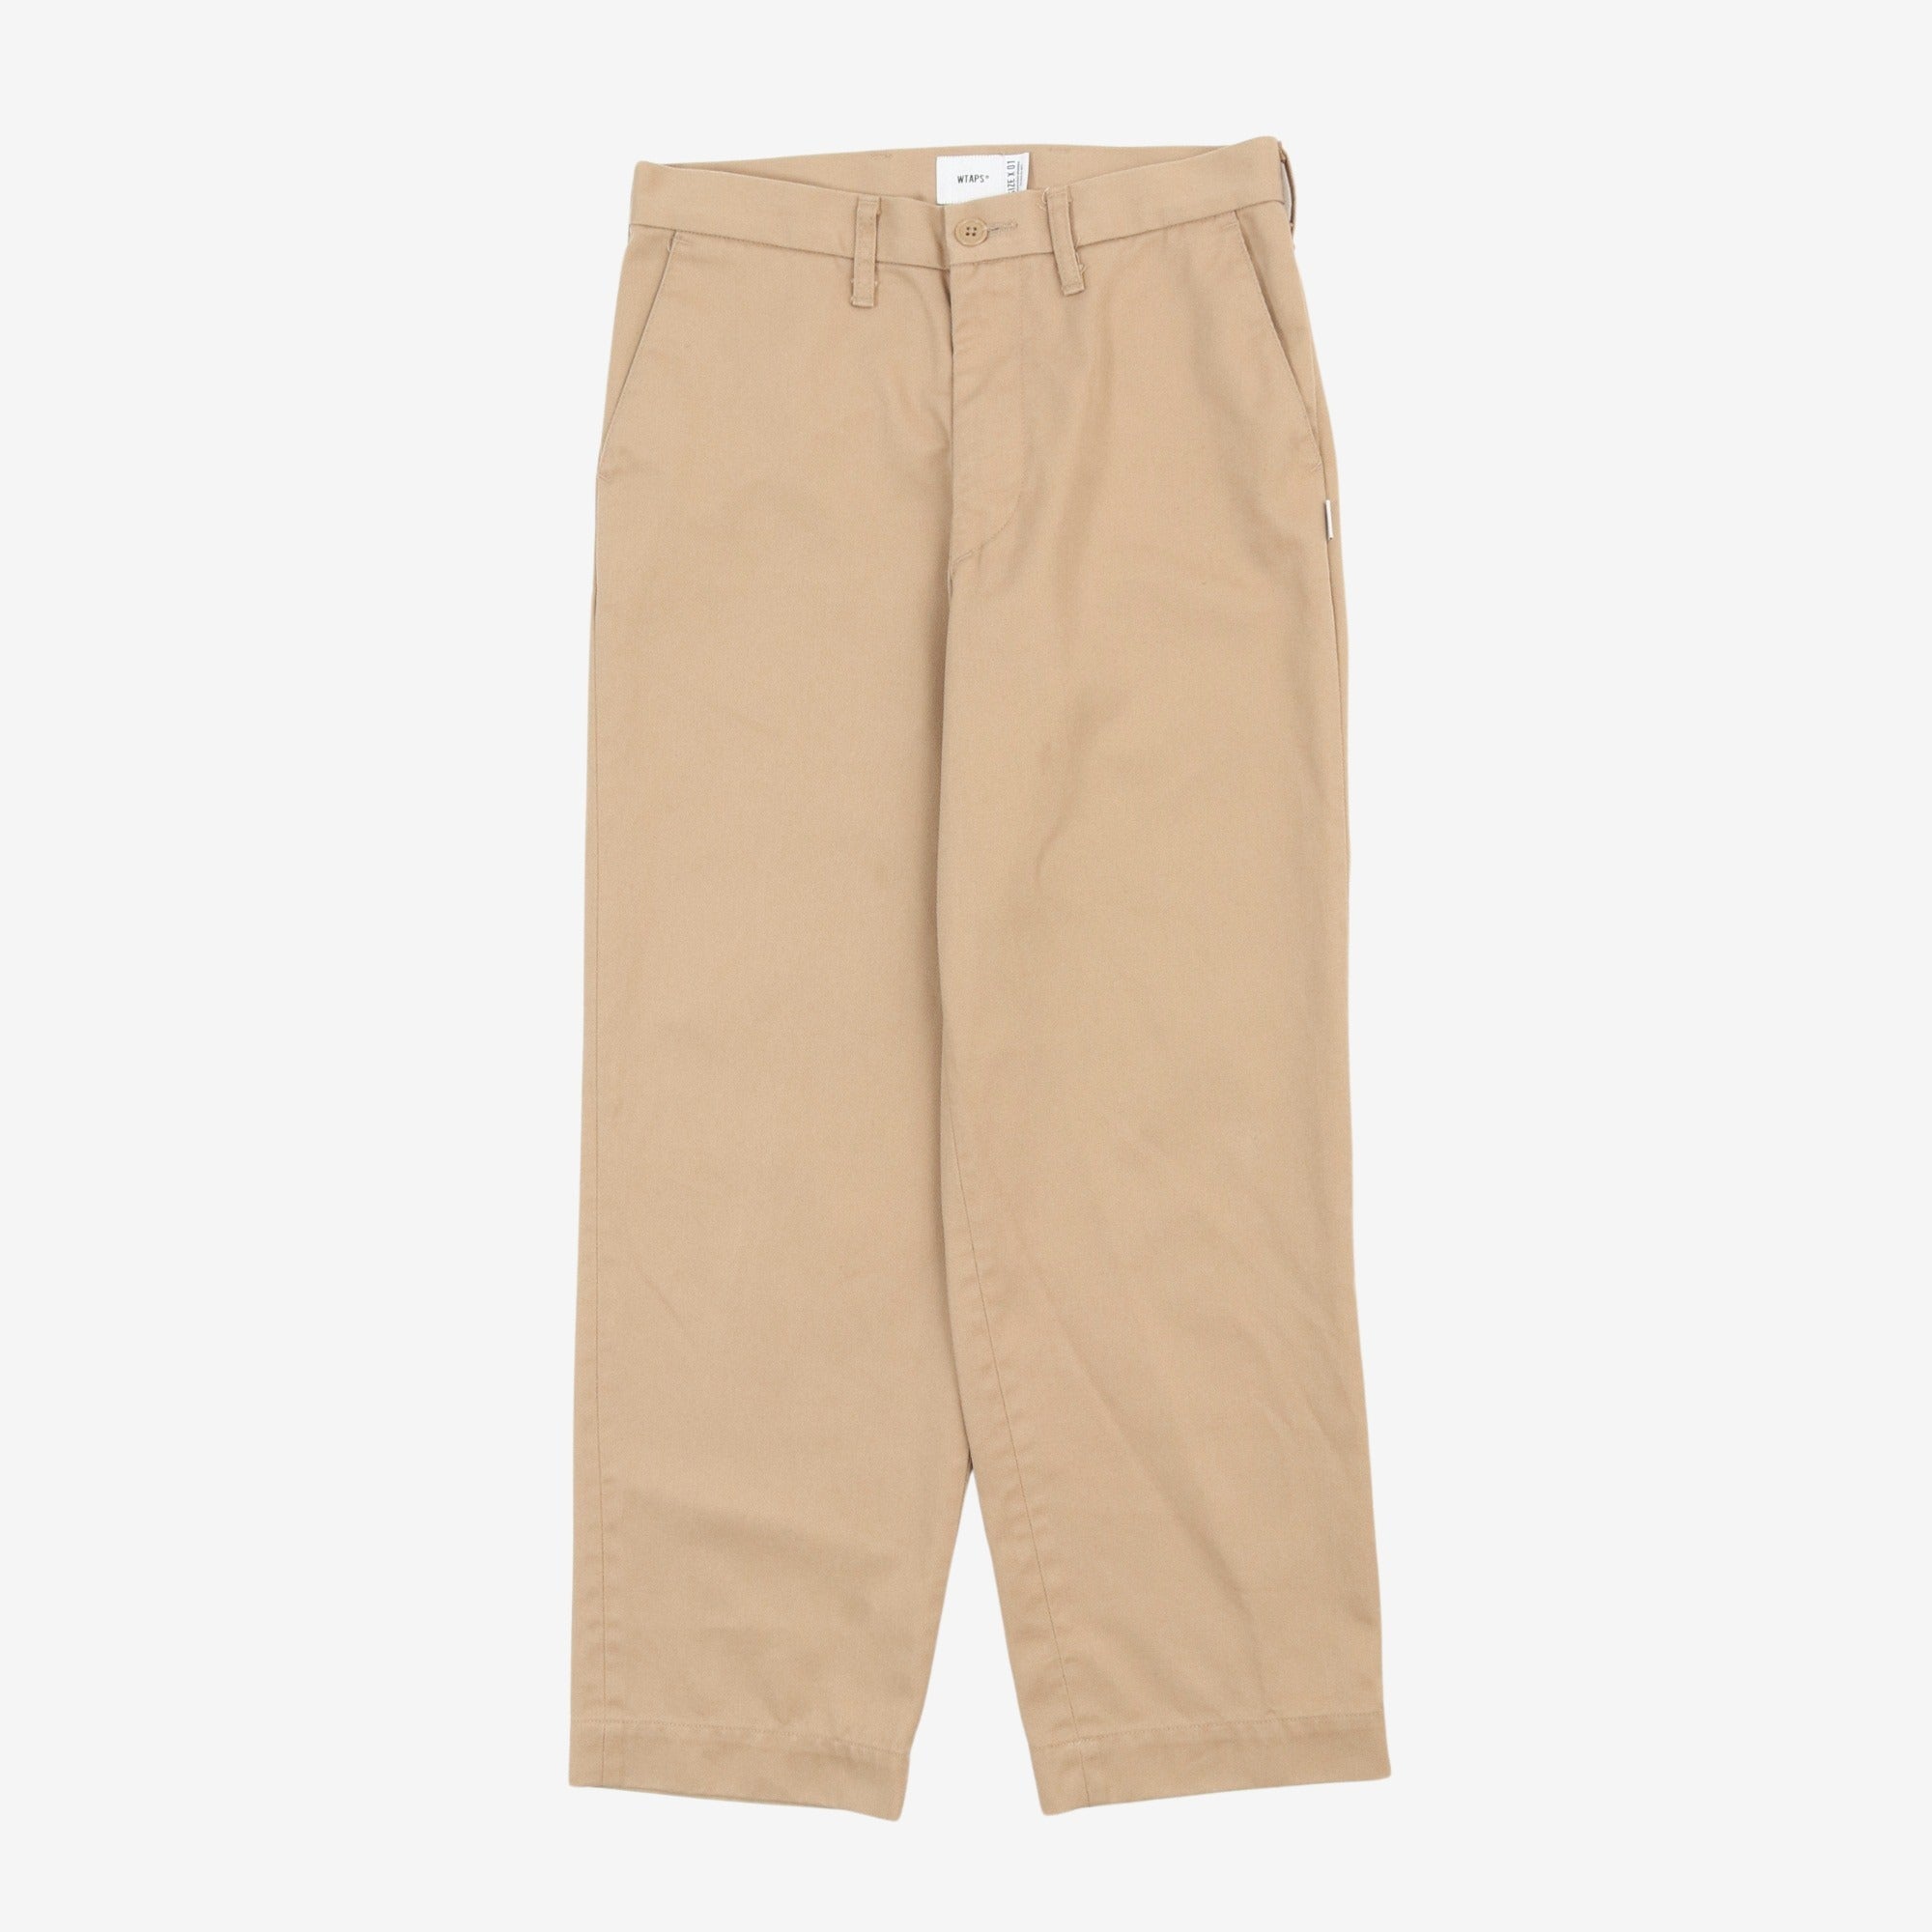 WTAPS Cotton Twill Trousers (30W x 27L) – Marrkt